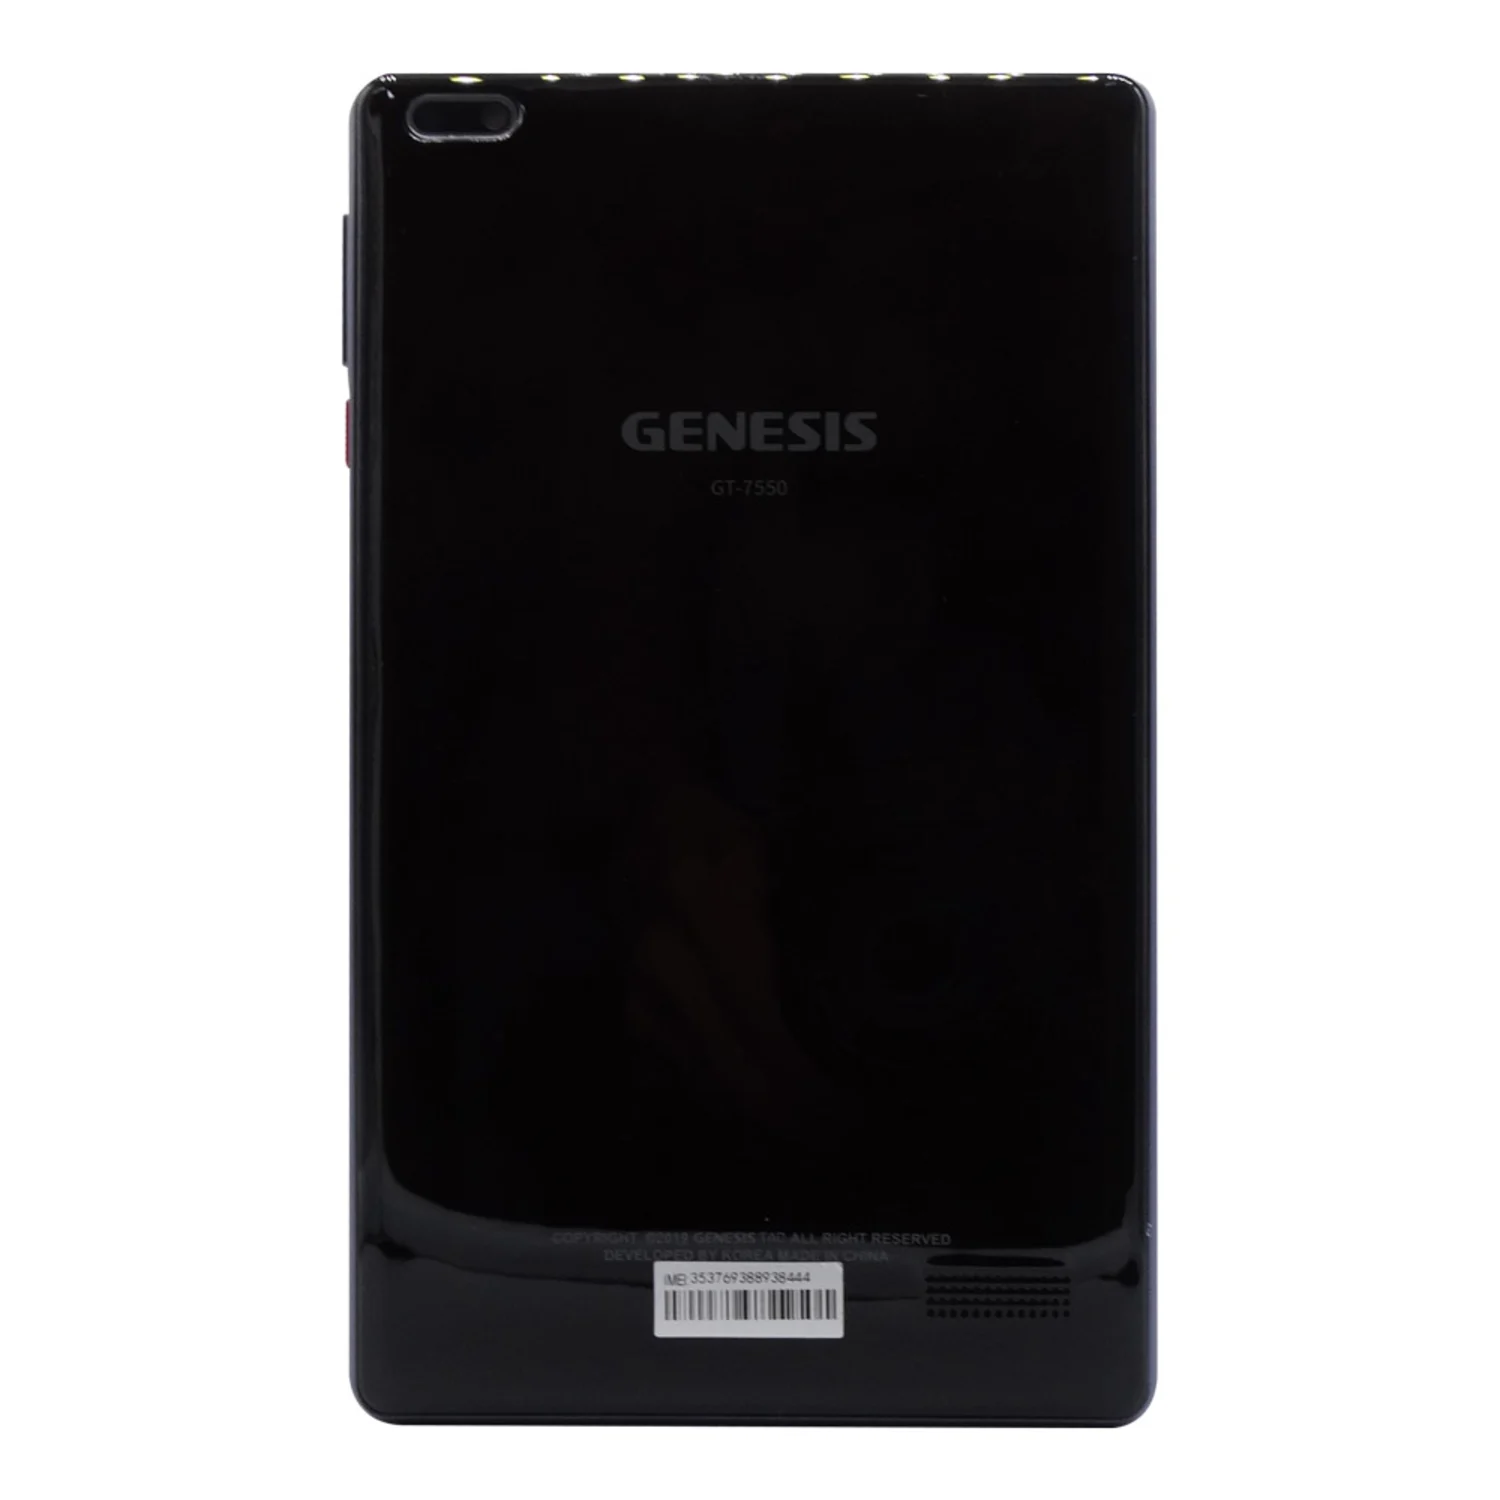 Tablet Genesis GT-7550 4G Tela 7" 16GB 1GB RAM Single SIM - Preto